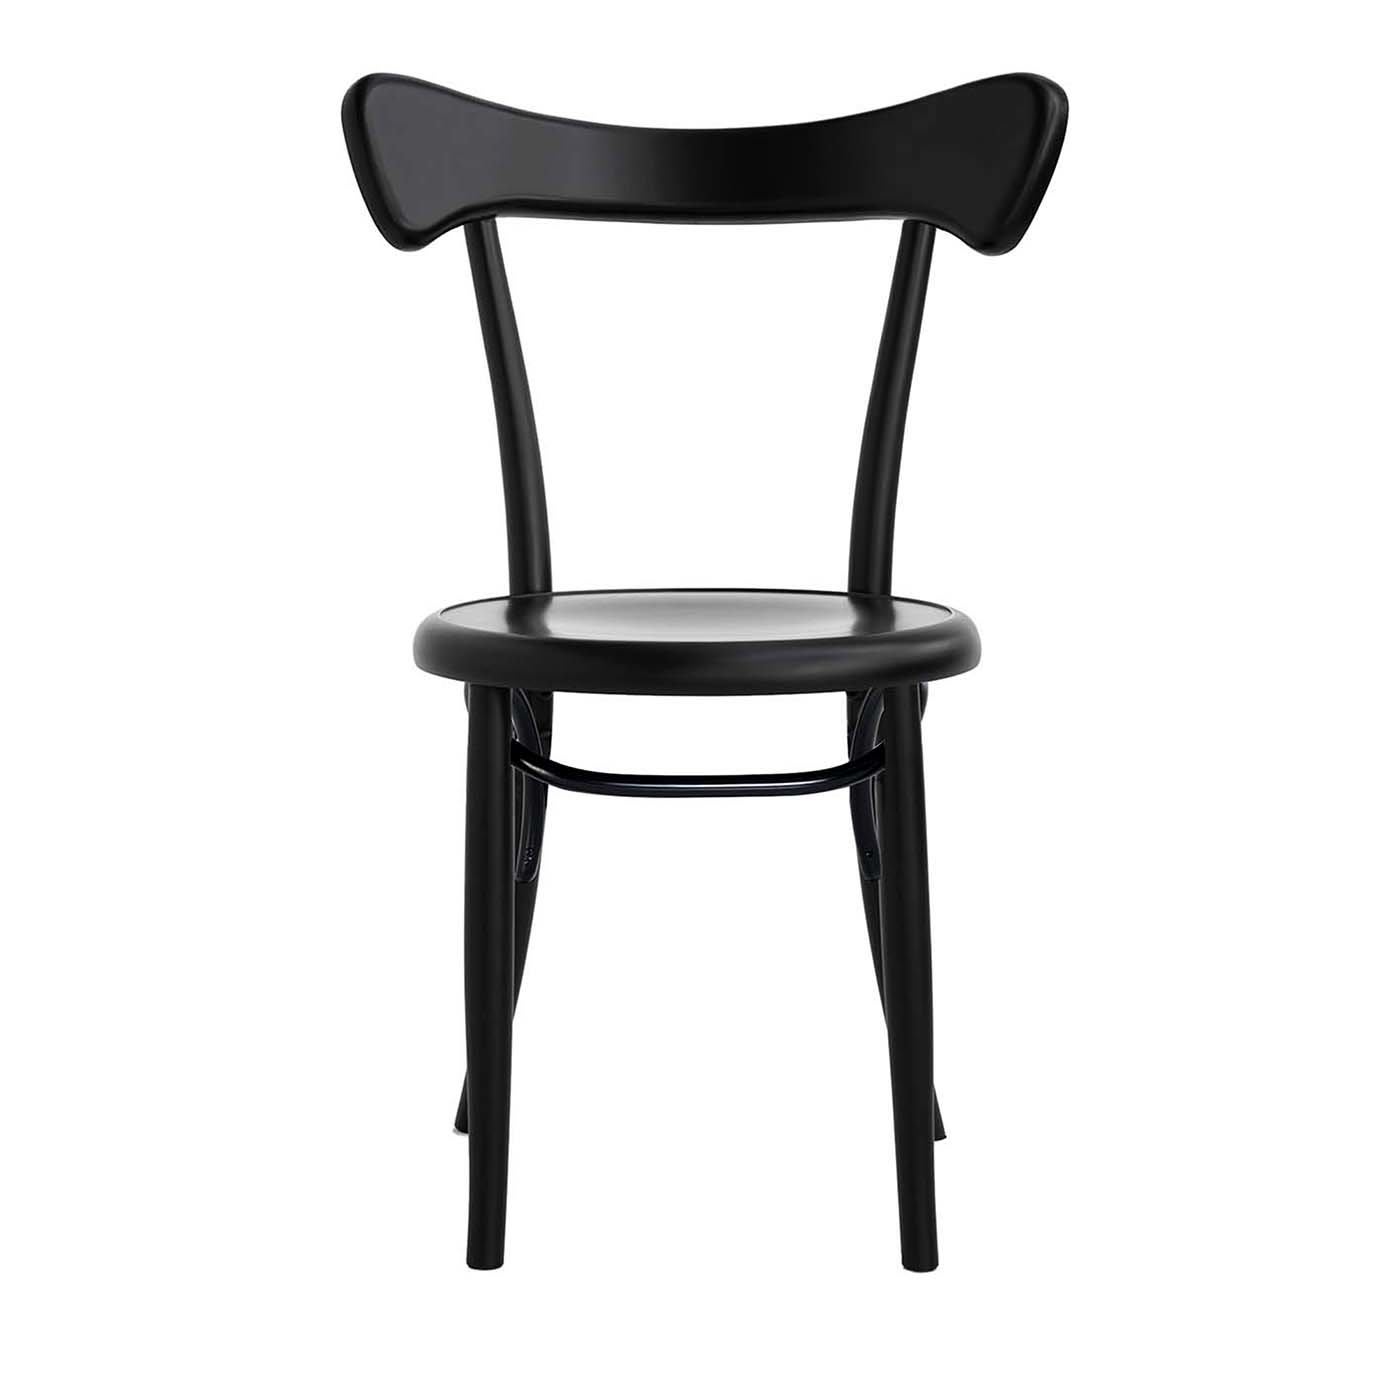 Cafestuhl Chair by Nigel Coates - Gebrüder Thonet Vienna GmbH (GTV) – Wiener GTV Design